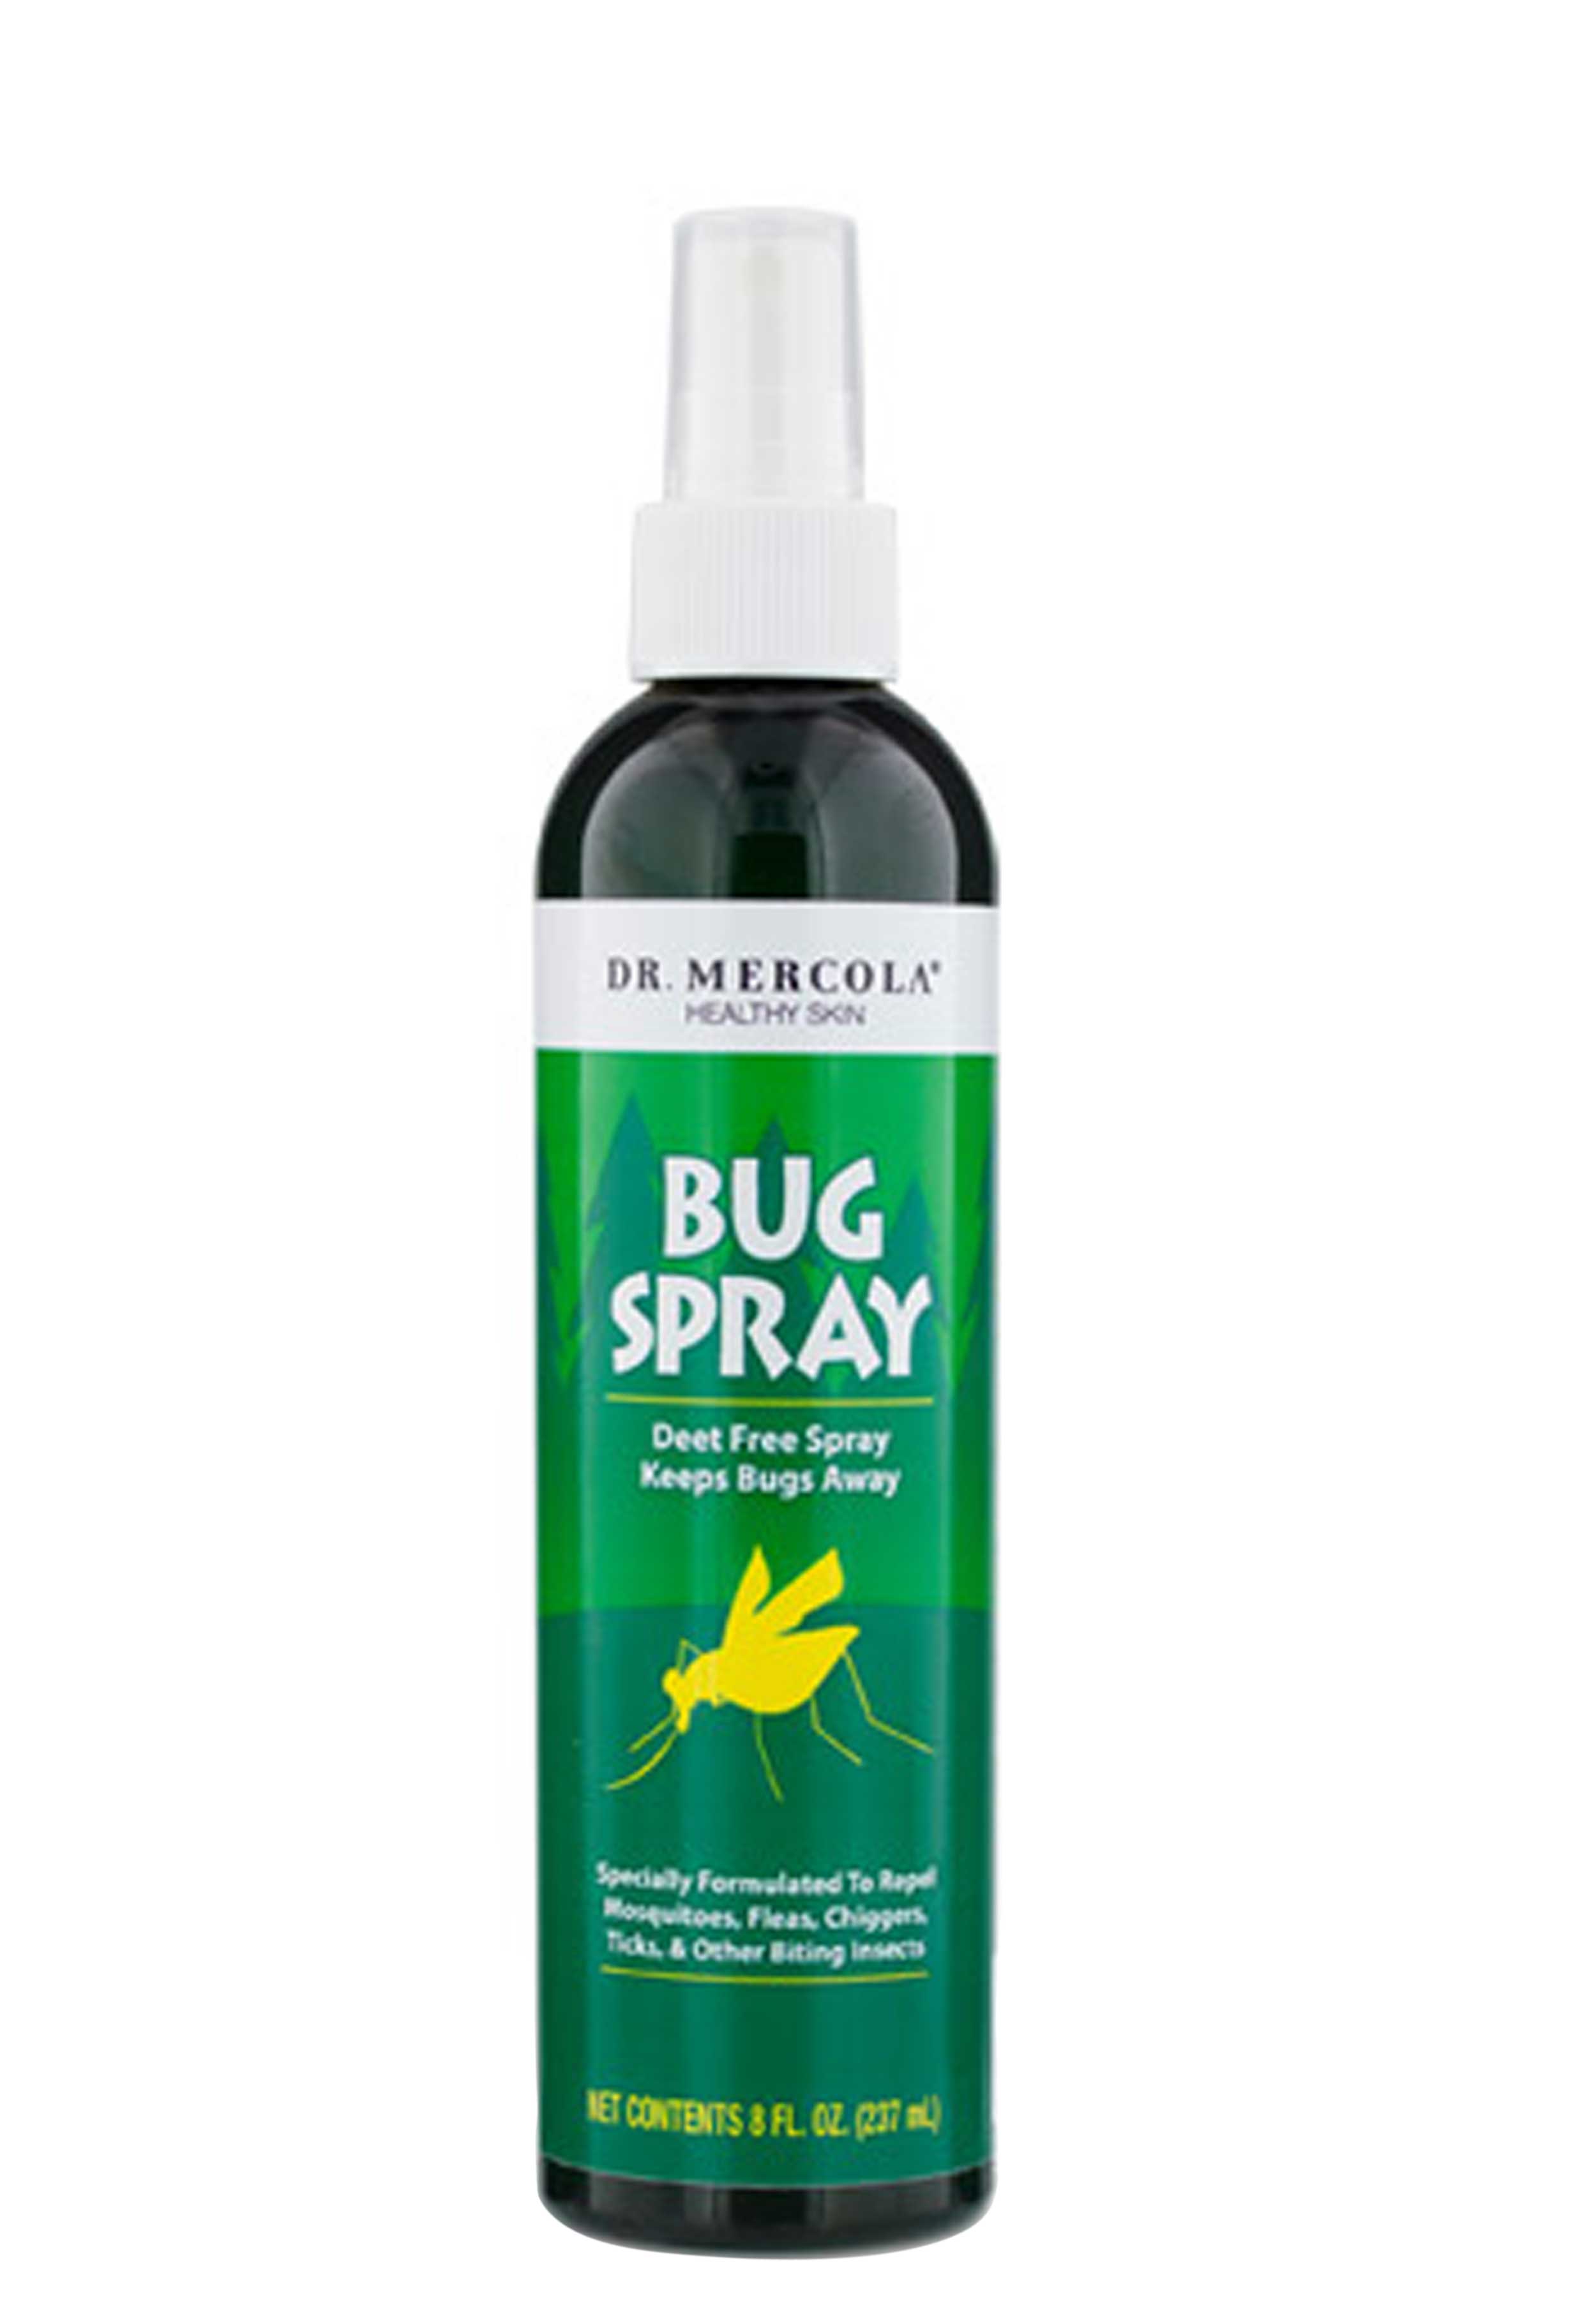 Dr. Mercola Bug Spray